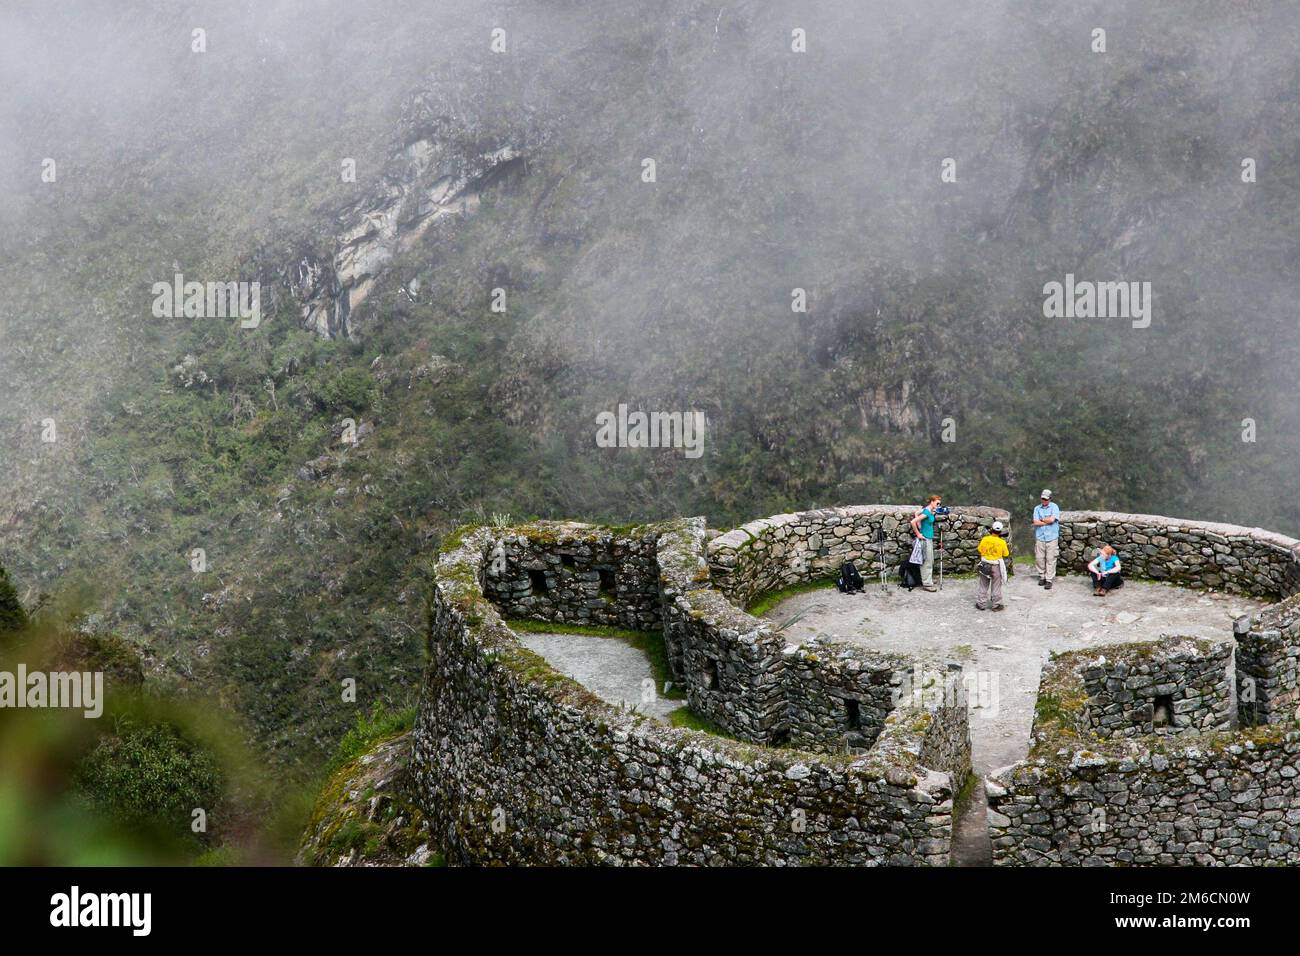 Inca Trail escursionisti nella nebbia. Foto Stock